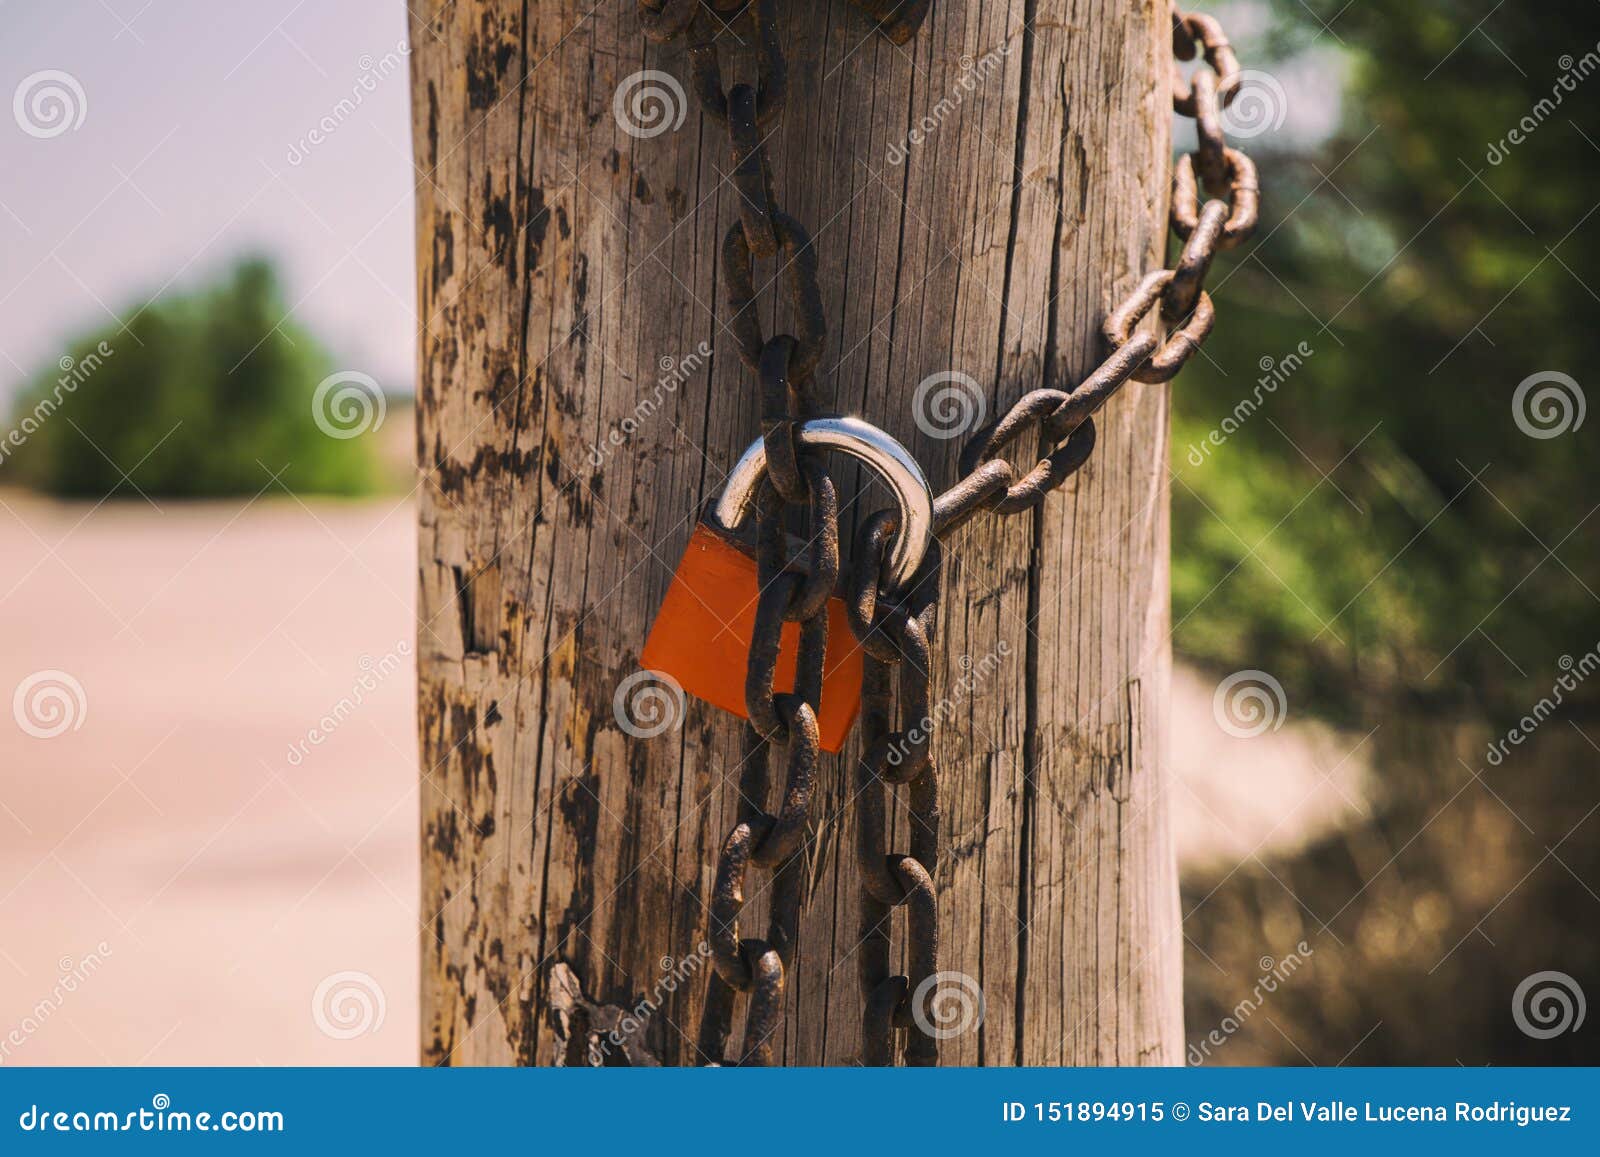 rusty padlock closing the gate